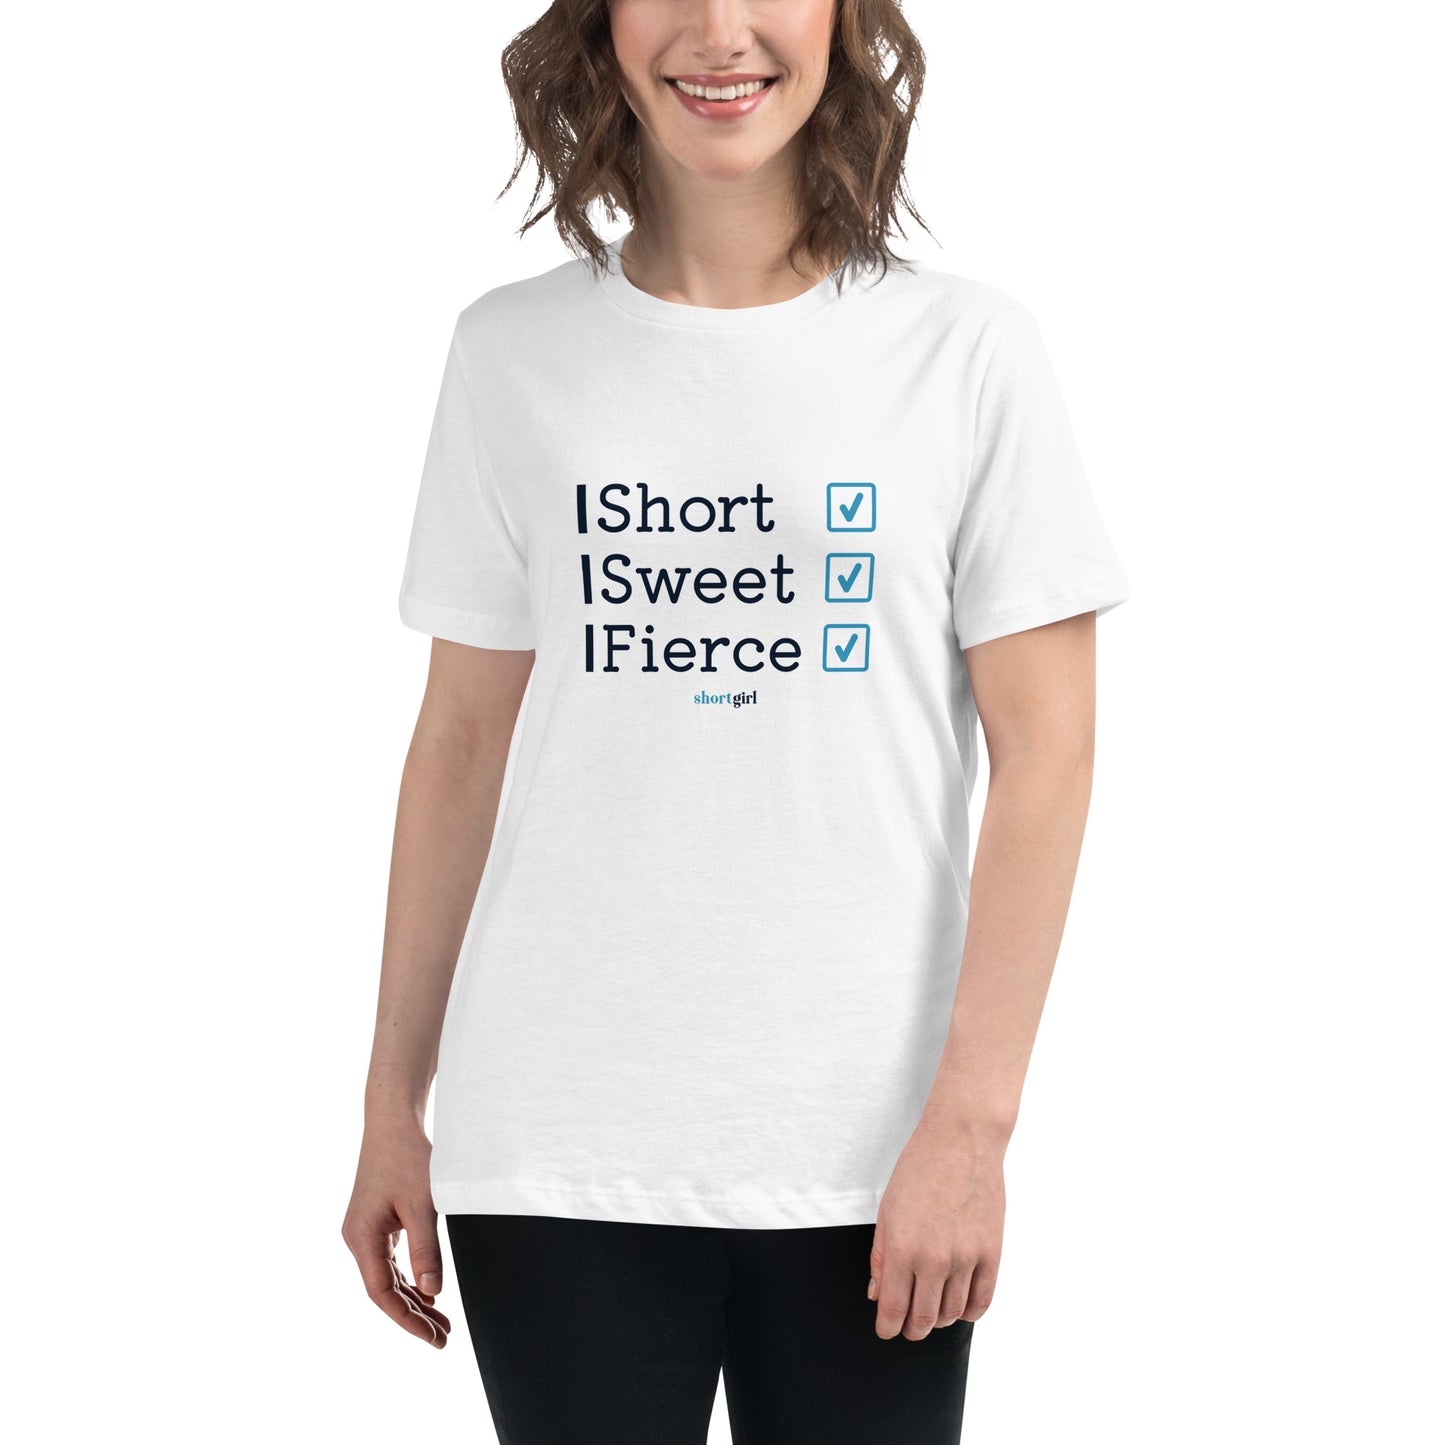 Women's Relaxed T-Shirt - Short, Sweet, Fierce